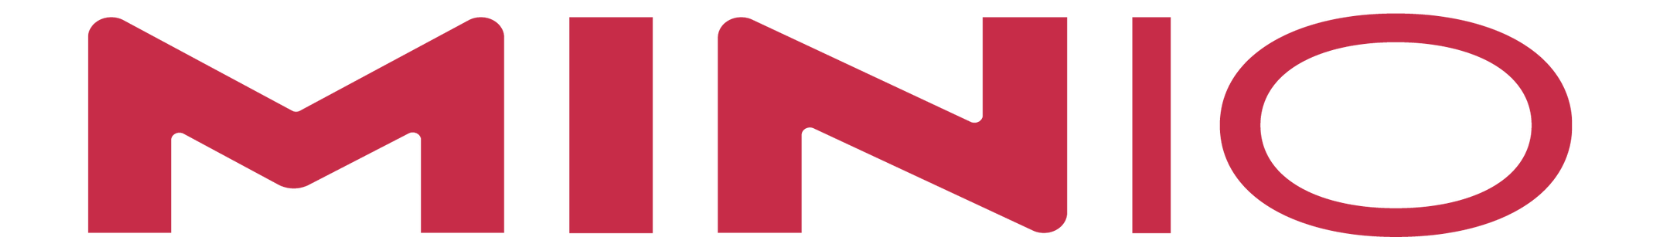 MINIO logo pink